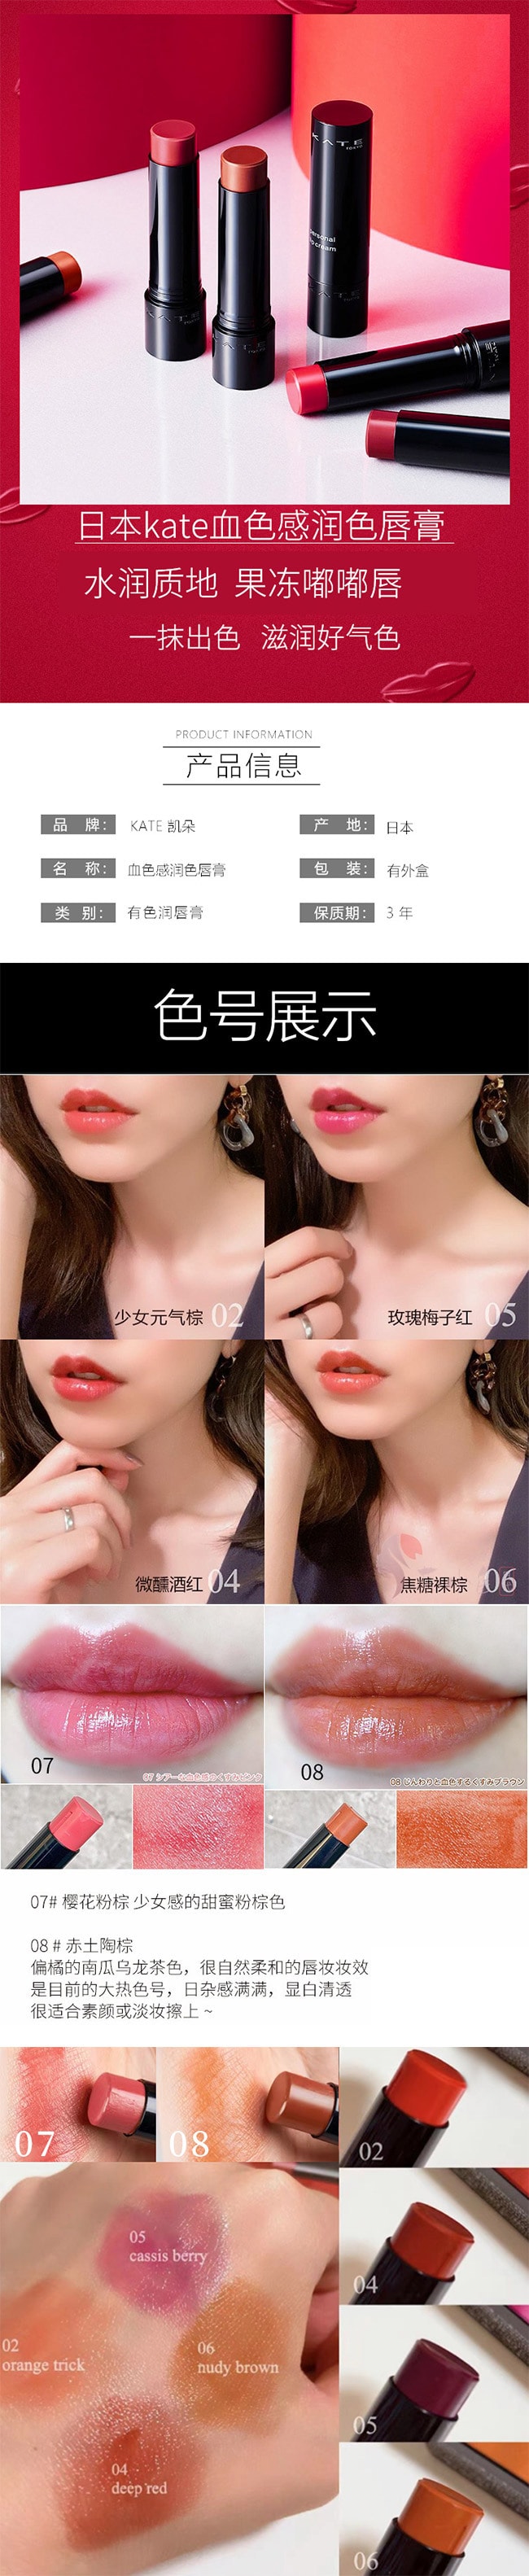 【日本直效郵件】KATE 凱朵 CC有色潤唇膏 3.7g #04